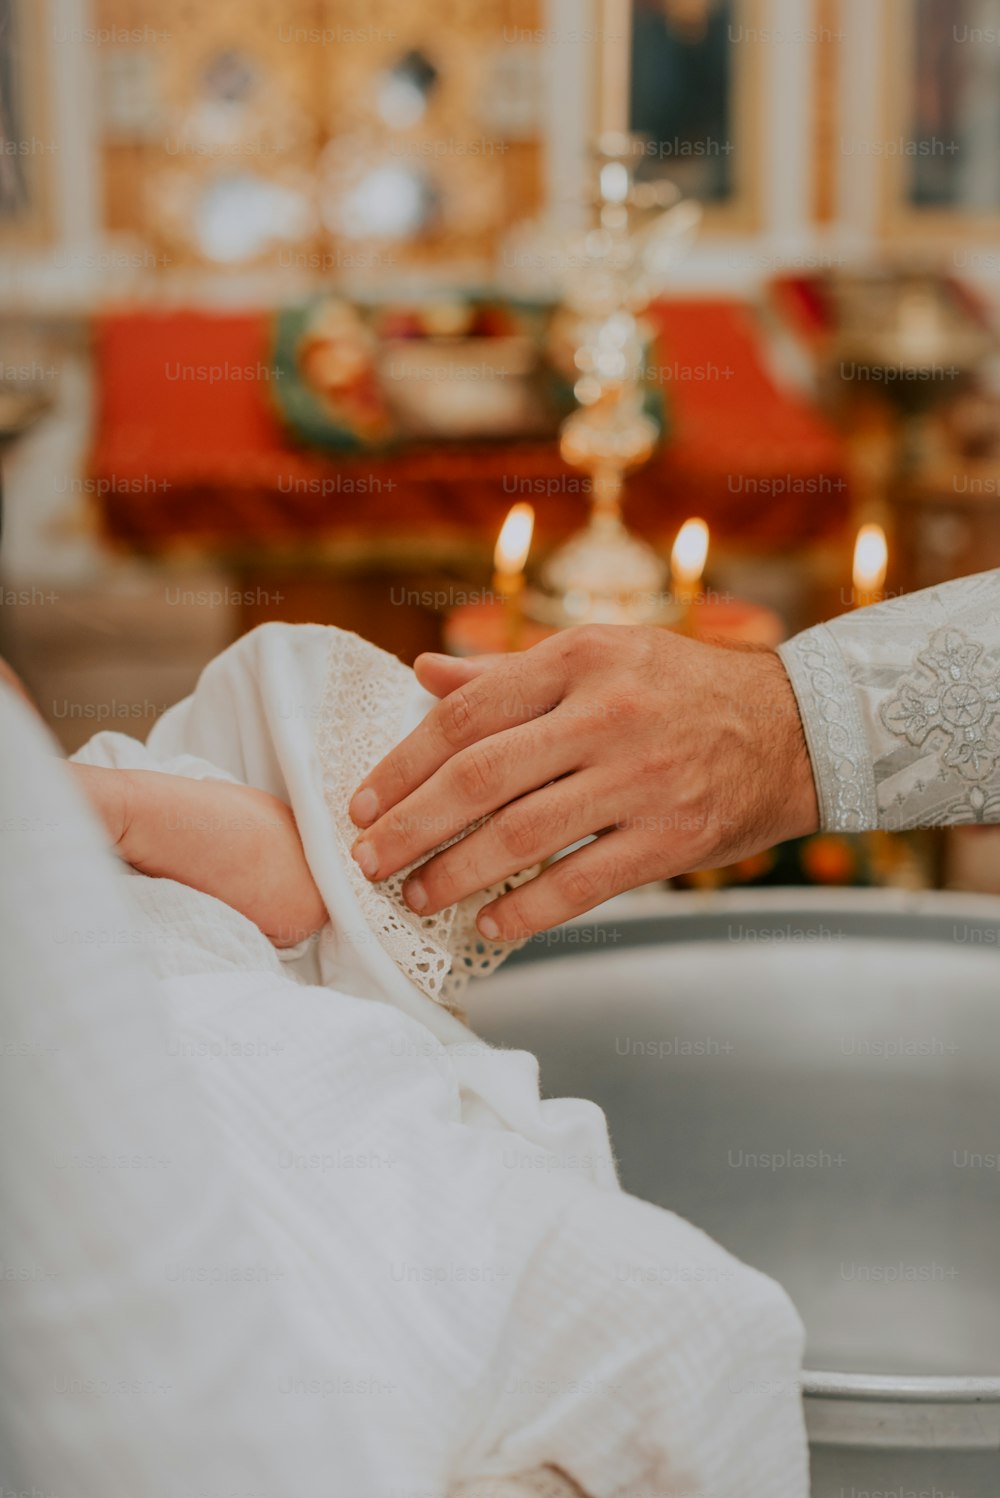 Ein Baby wird von einem Priester gehalten